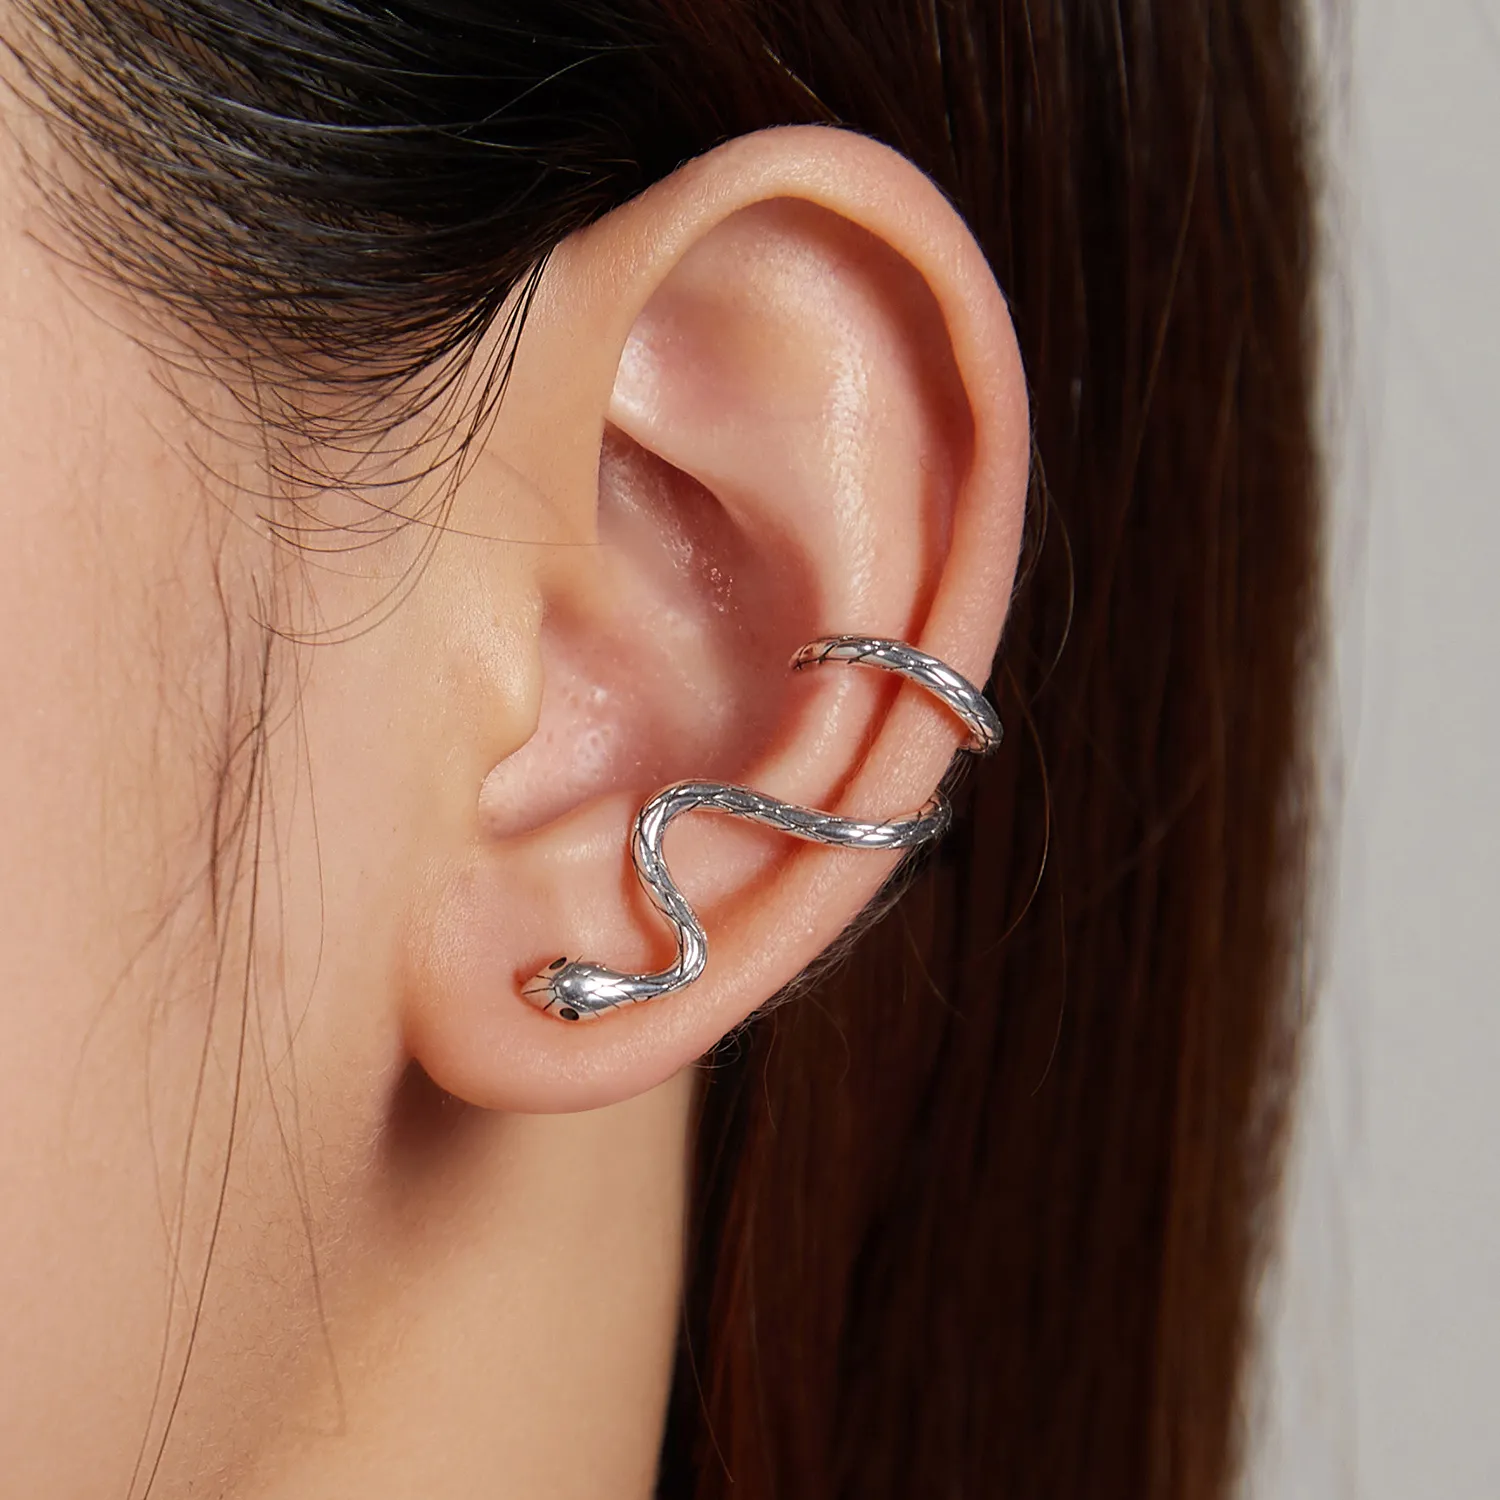 Clema de ureche cu stil Pandora în formă de șarpe mistic - BSE510